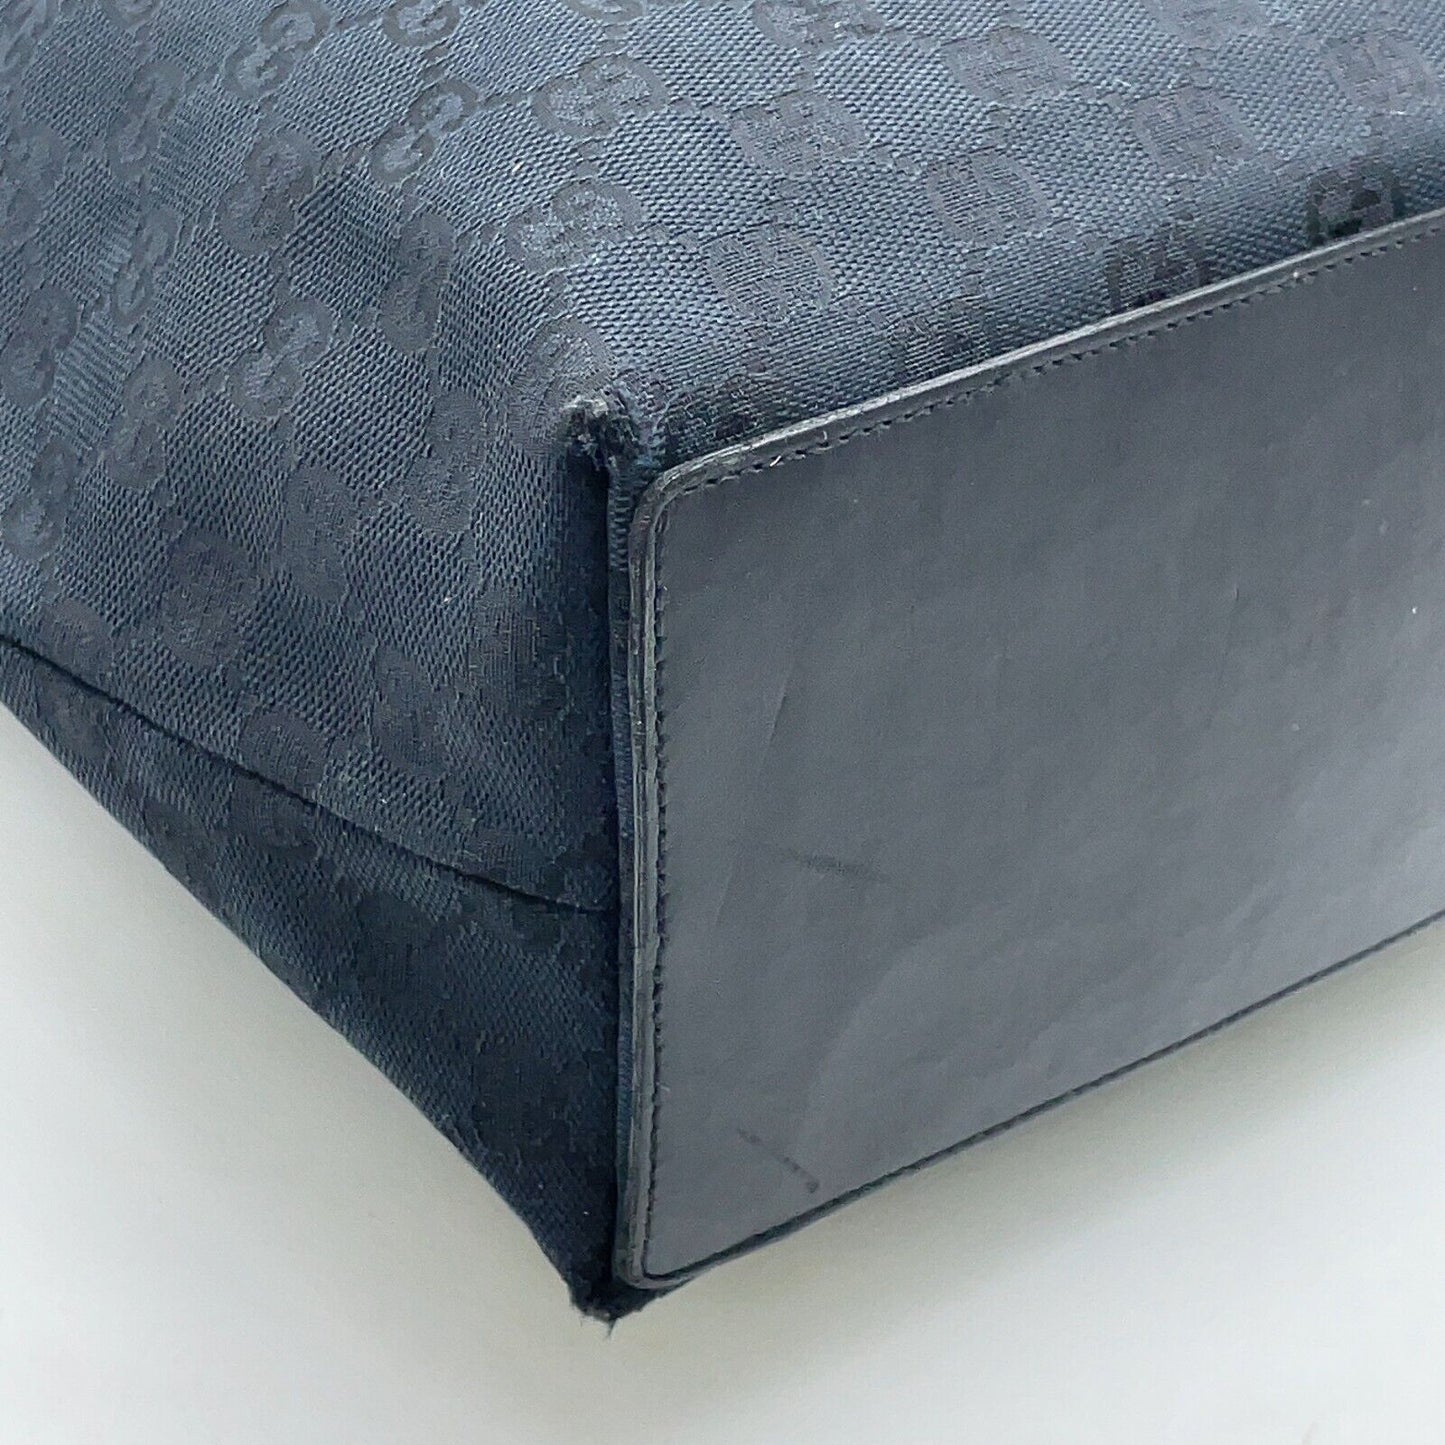 Original/Auth Gucci - Tote Bag Handtasche - Klassisch - GG Canvas mit Leder - Blau